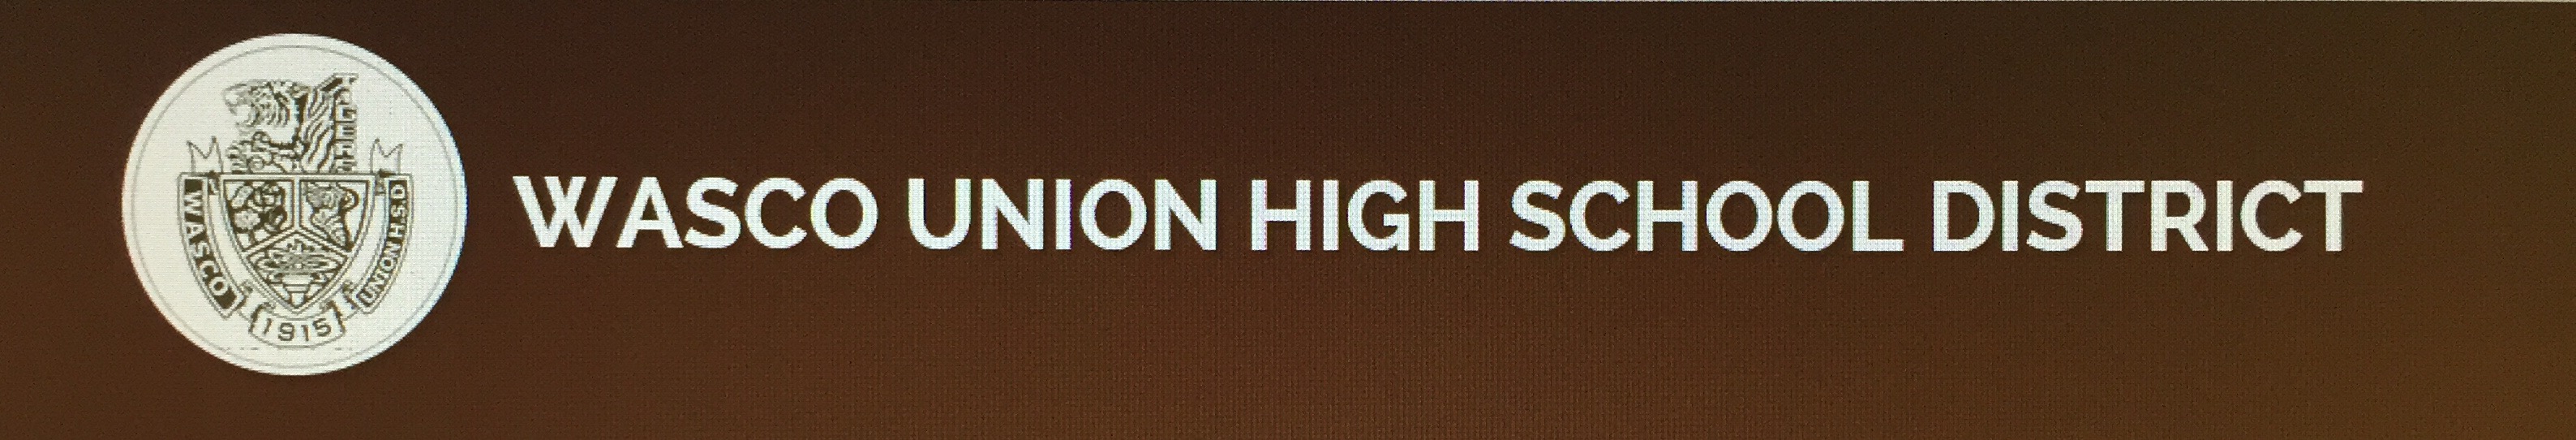 Wasco Union High School District Logo